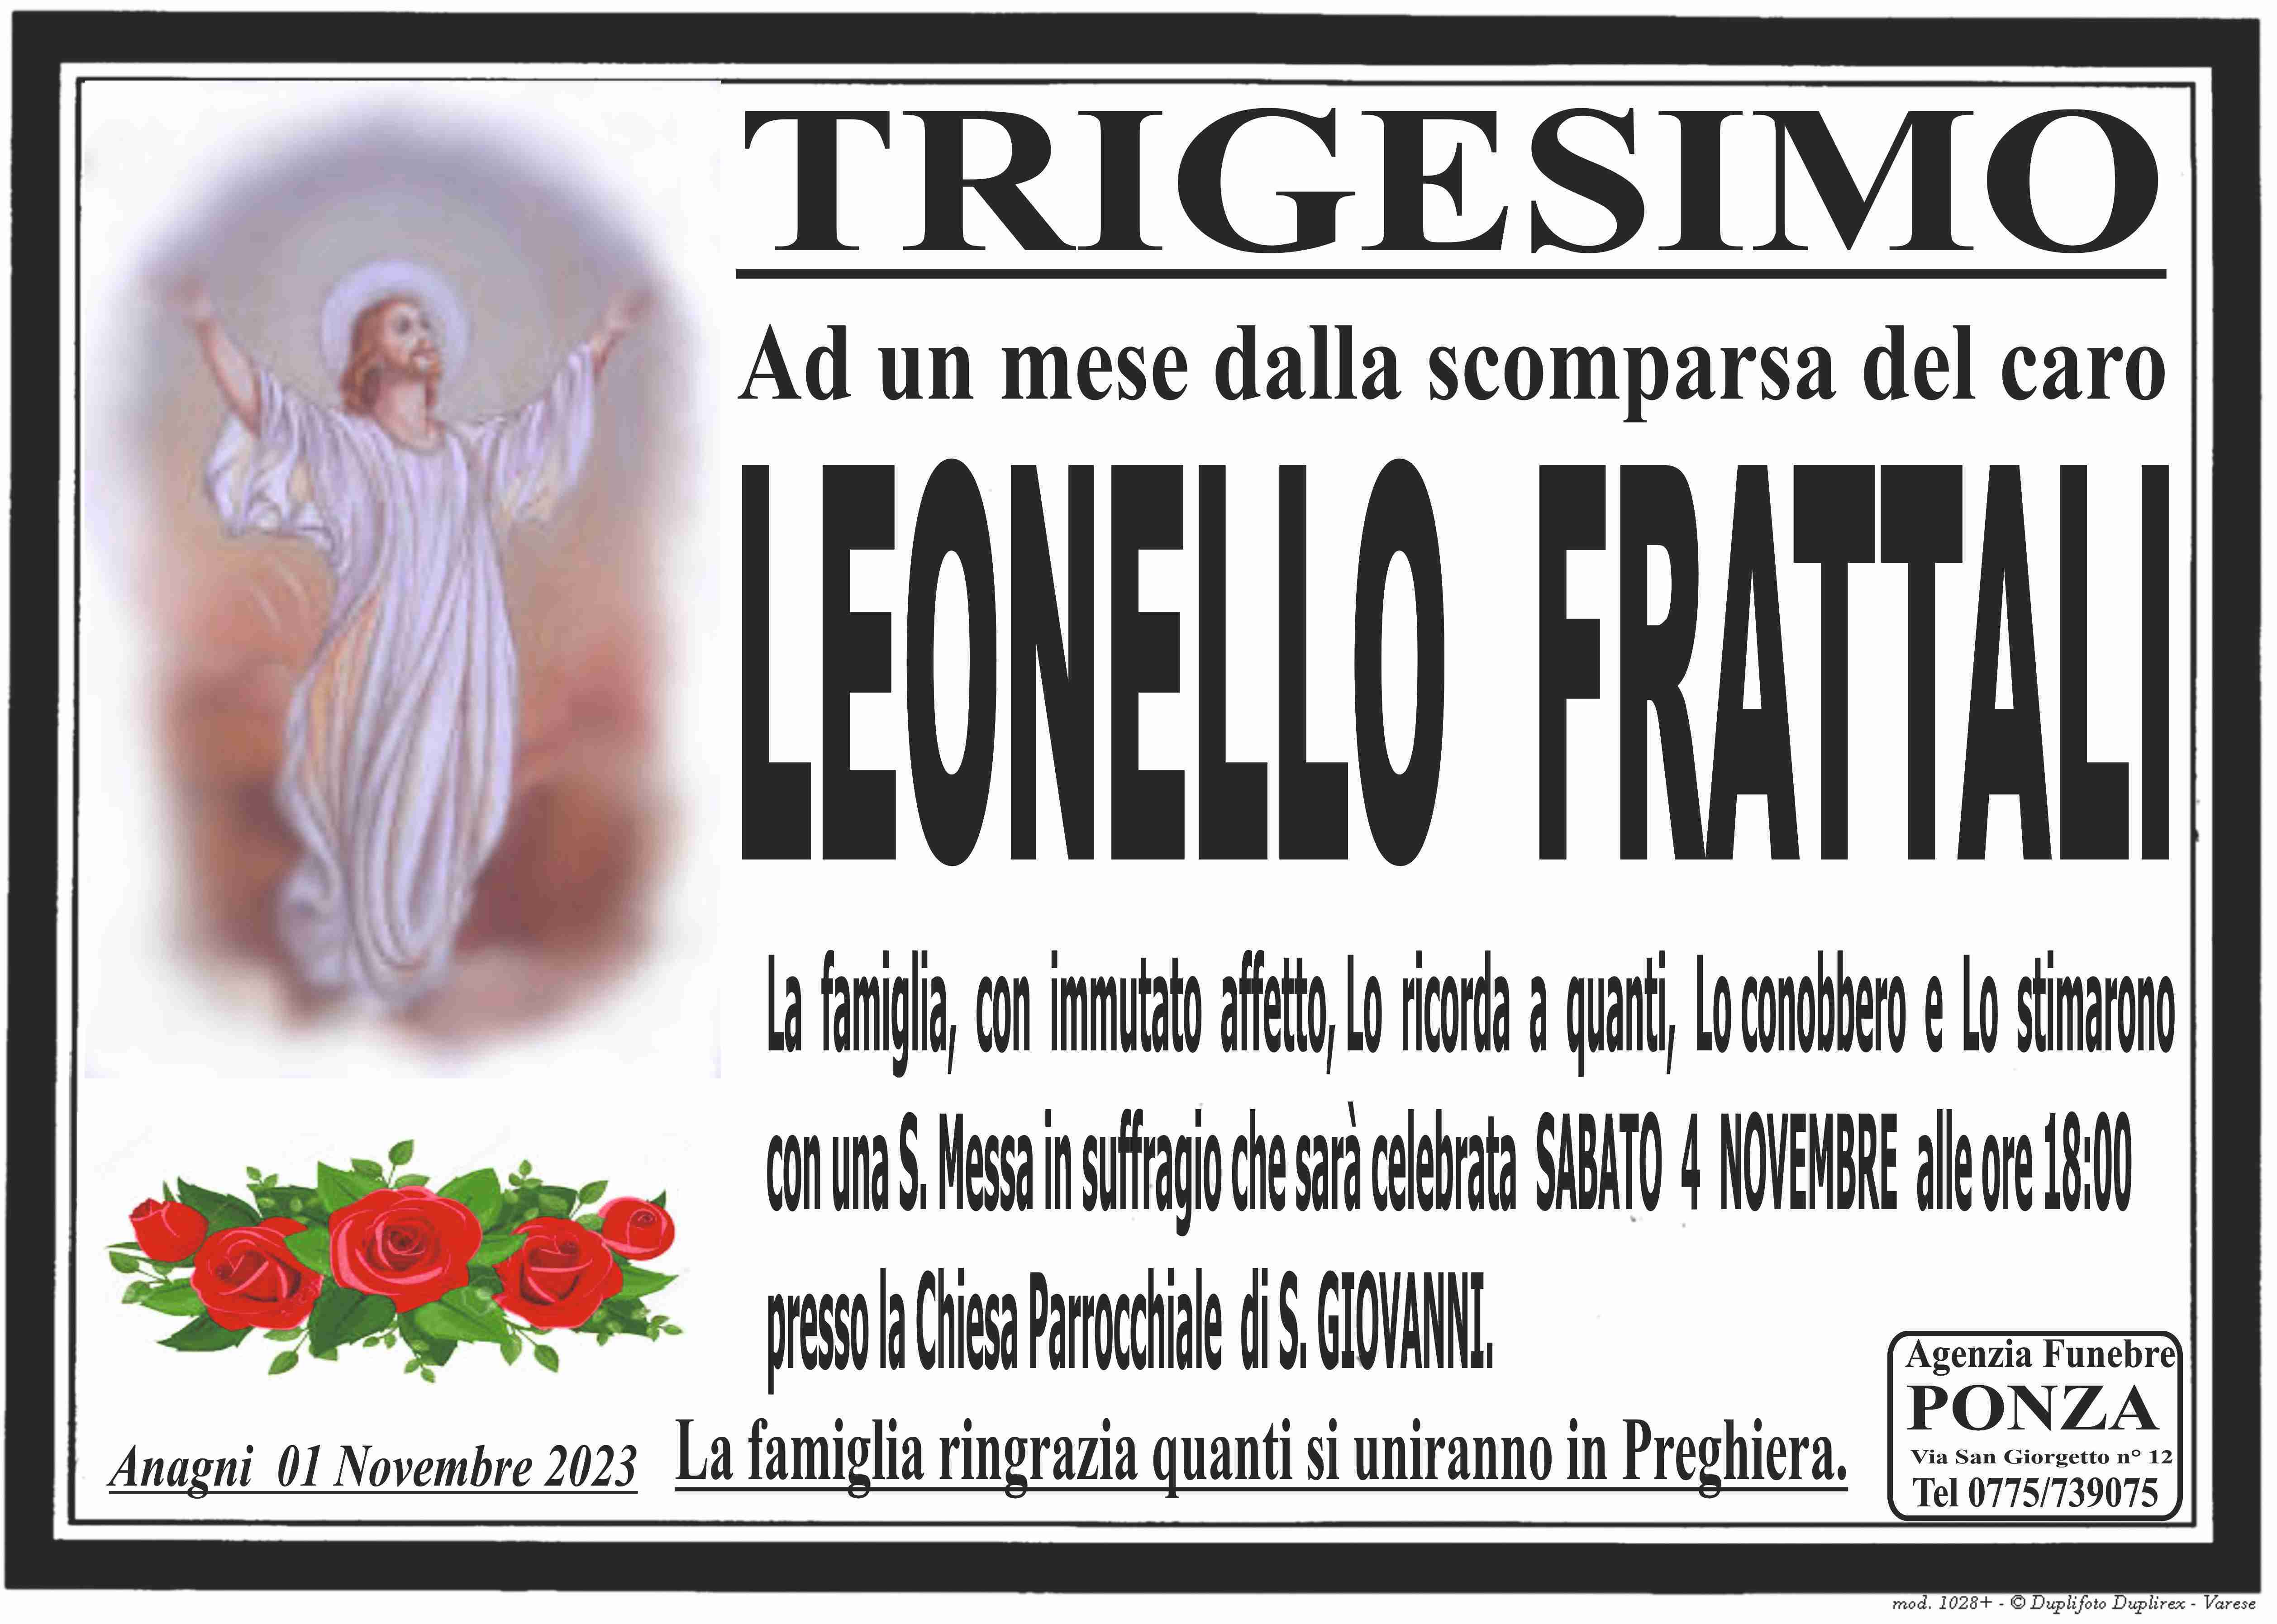 Leonello Frattali